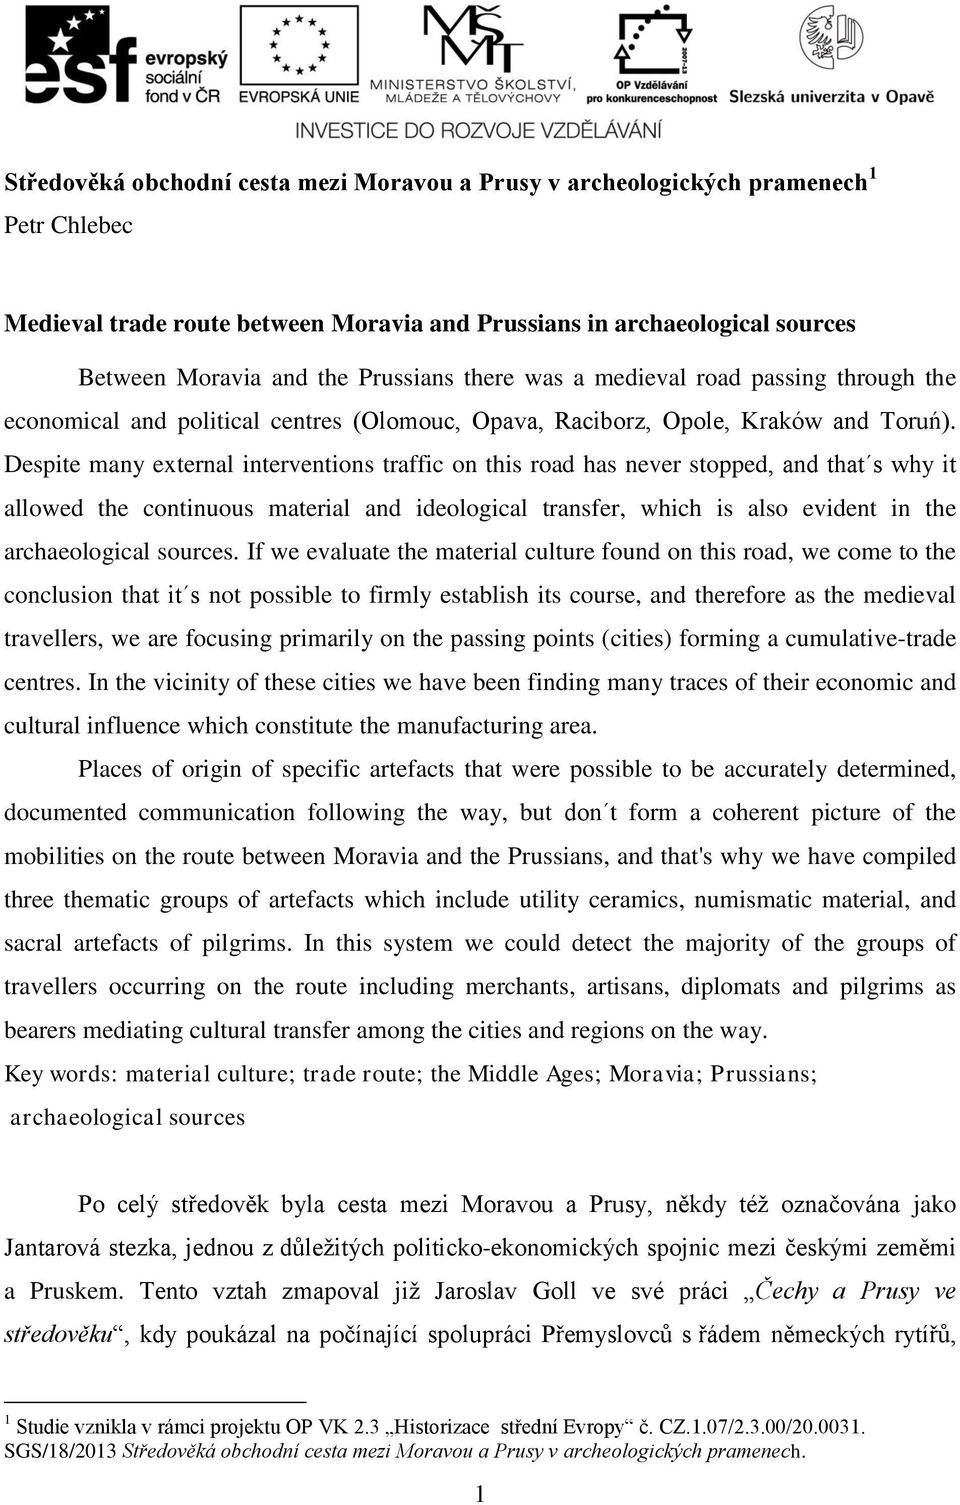 Středověká obchodní cesta mezi Moravou a Prusy v archeologických pramenech  1 Petr Chlebec - PDF Free Download